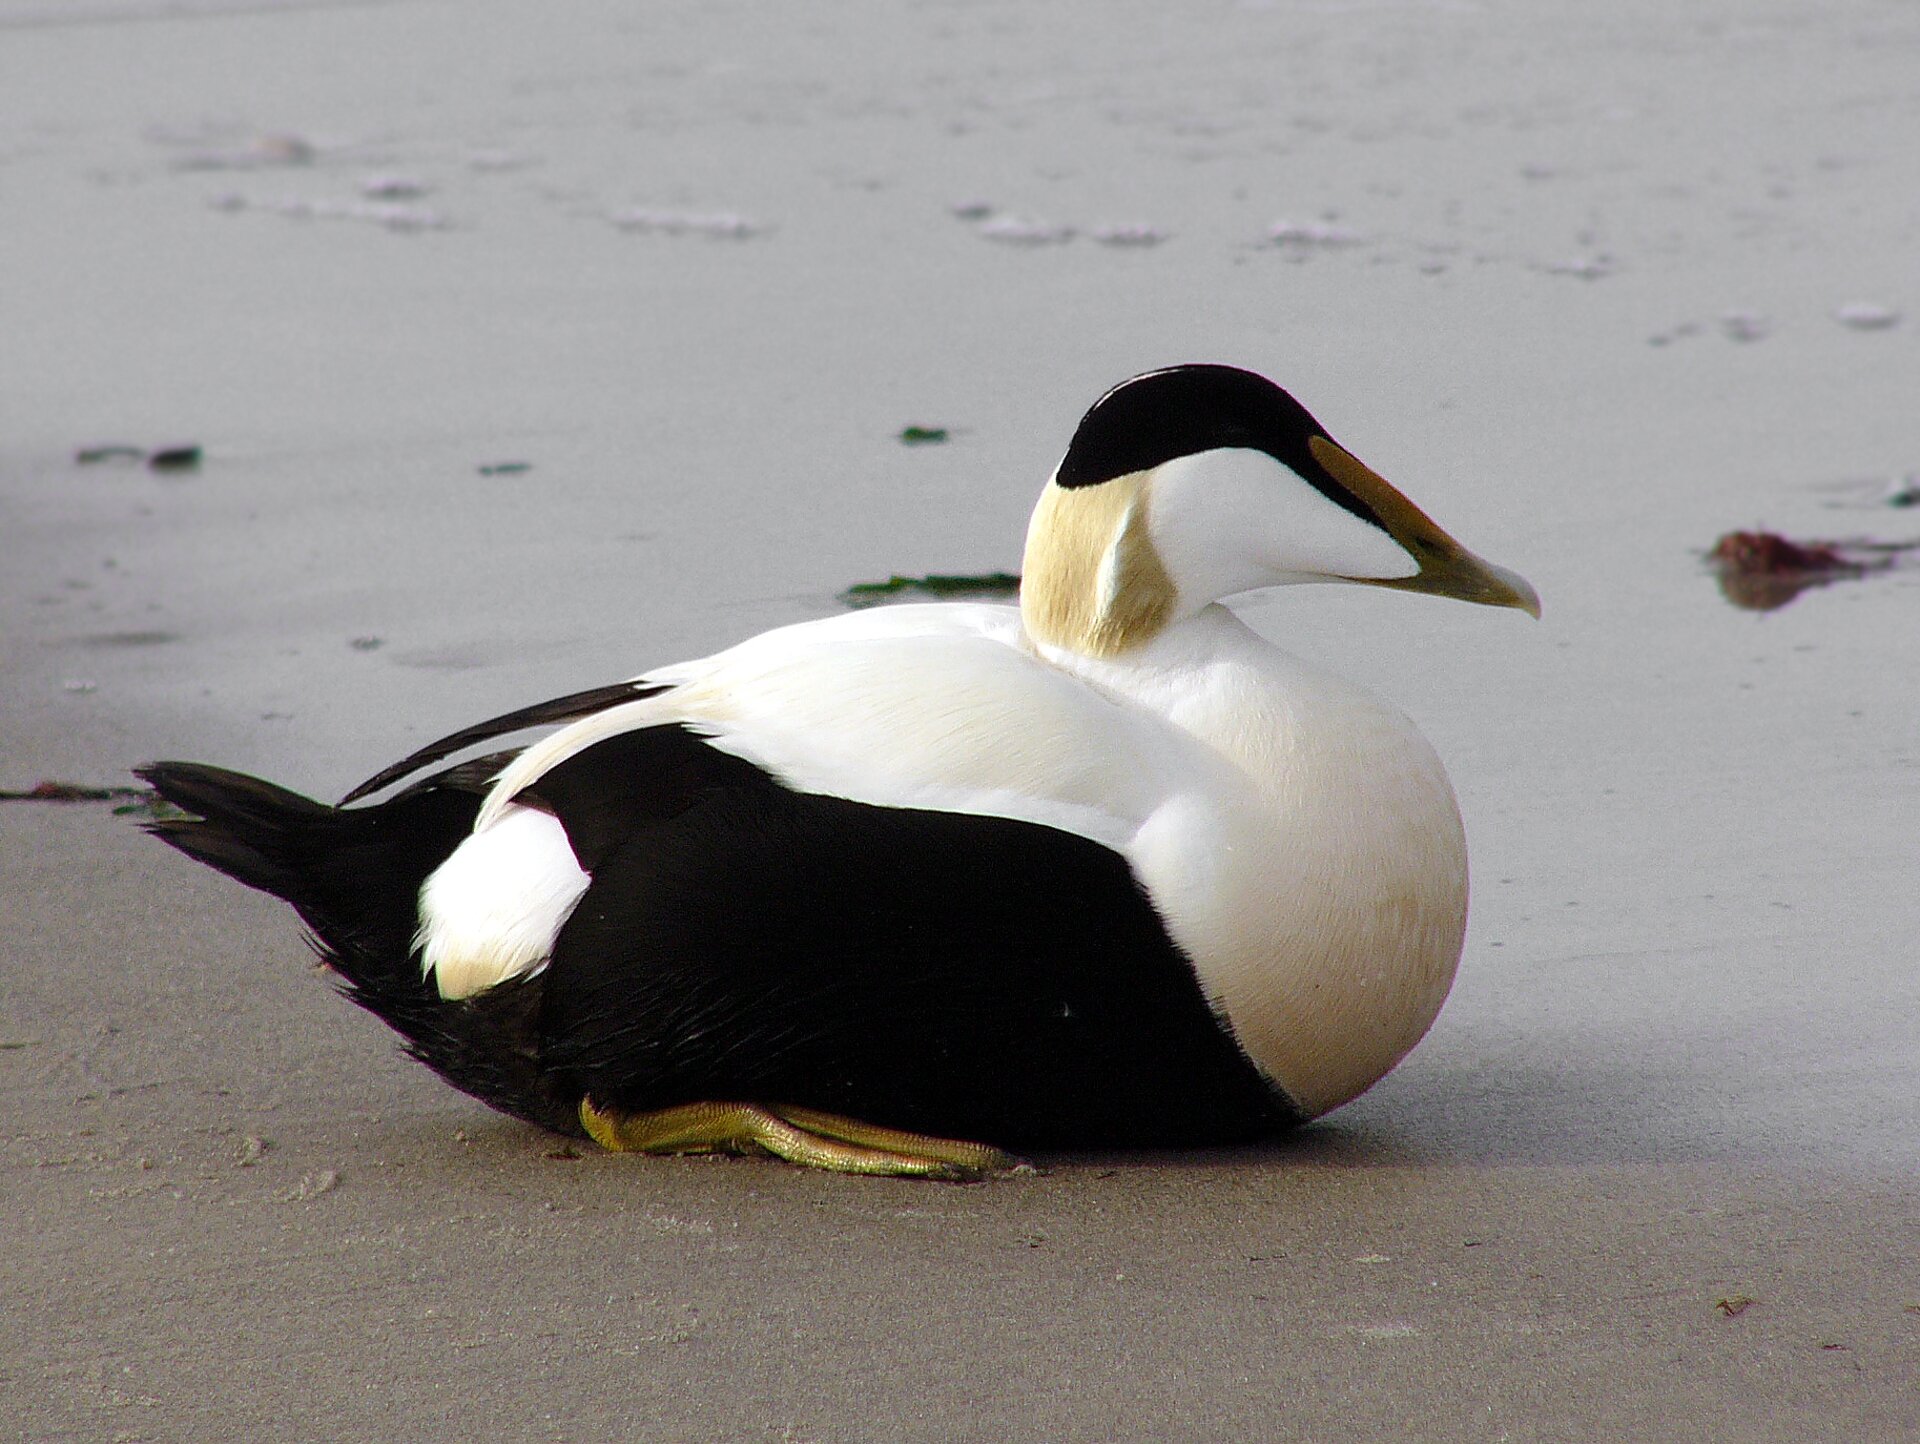 Czwarta ilustracja to kaczka edredon. Szyja i spód głowy ptaka są białe, czoło zielone, pozostałe części ciała szare.